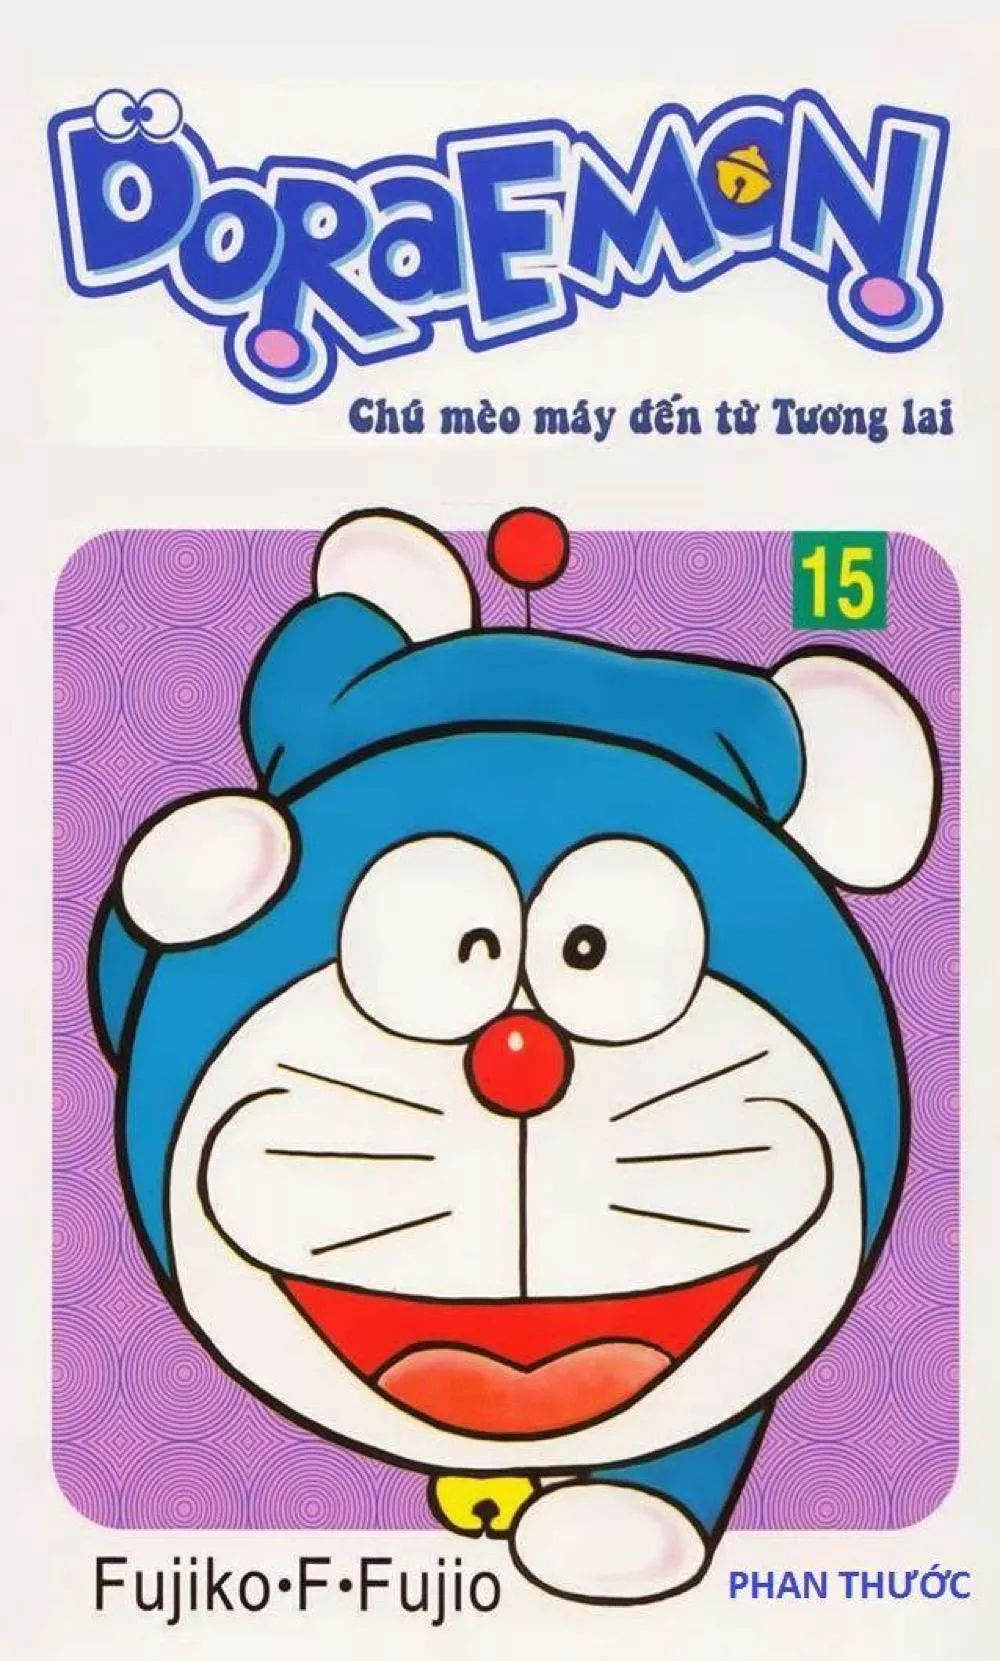 Doraemon Tập 27: Yêu thích những câu chuyện dễ thương về cậu bé Nobita và anh chú mèo máy hiền lành Doraemon? Đến ngay với tập 27 để cùng theo dõi một câu chuyện đầy hài hước và ý nghĩa.